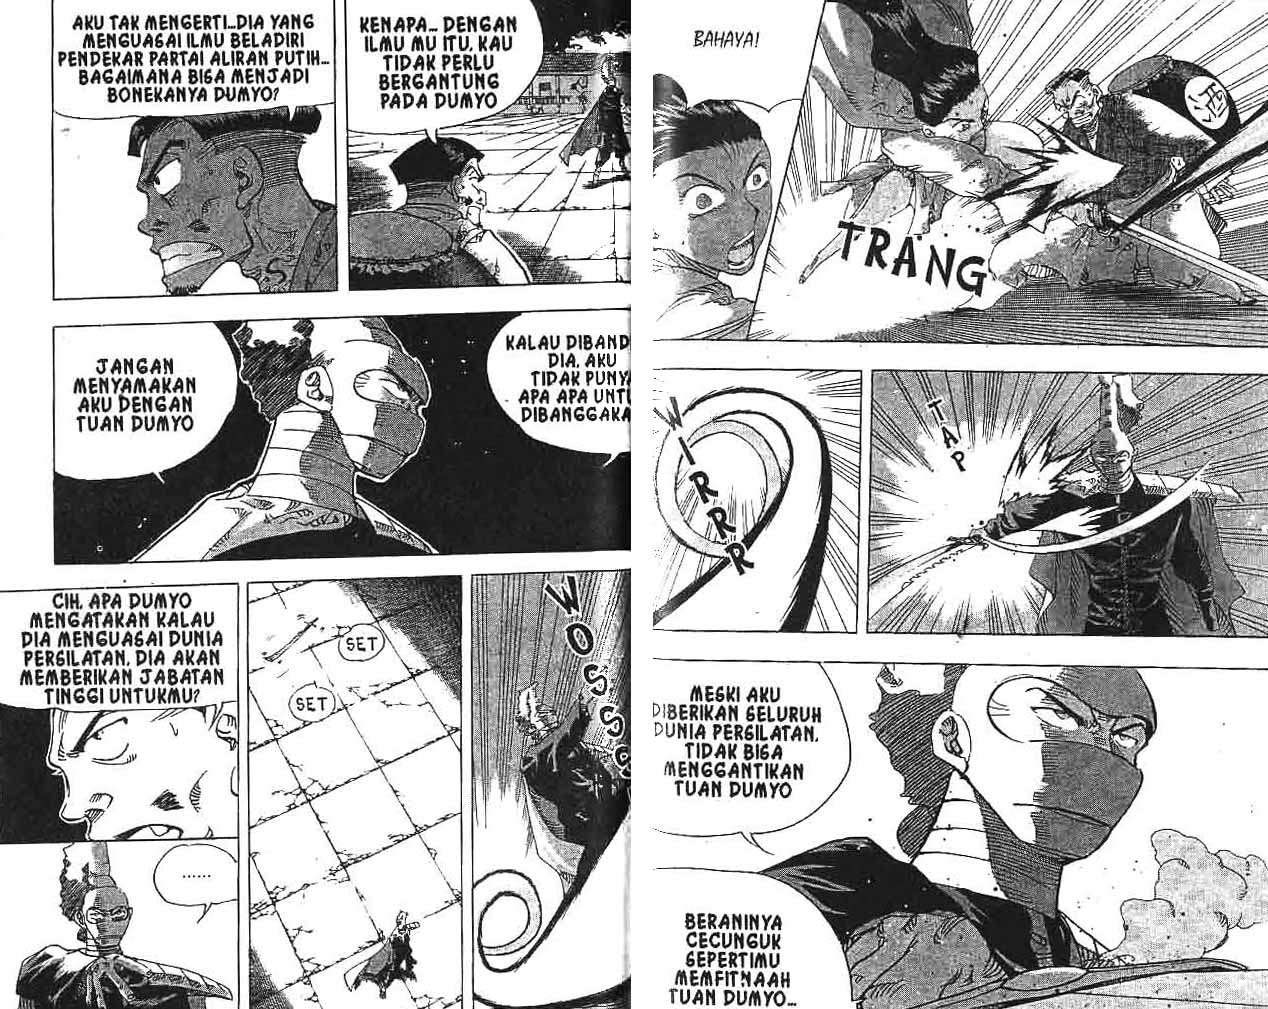 Безнравственный манга 24 глава. 25 Том крутого учителя Онидзуки.